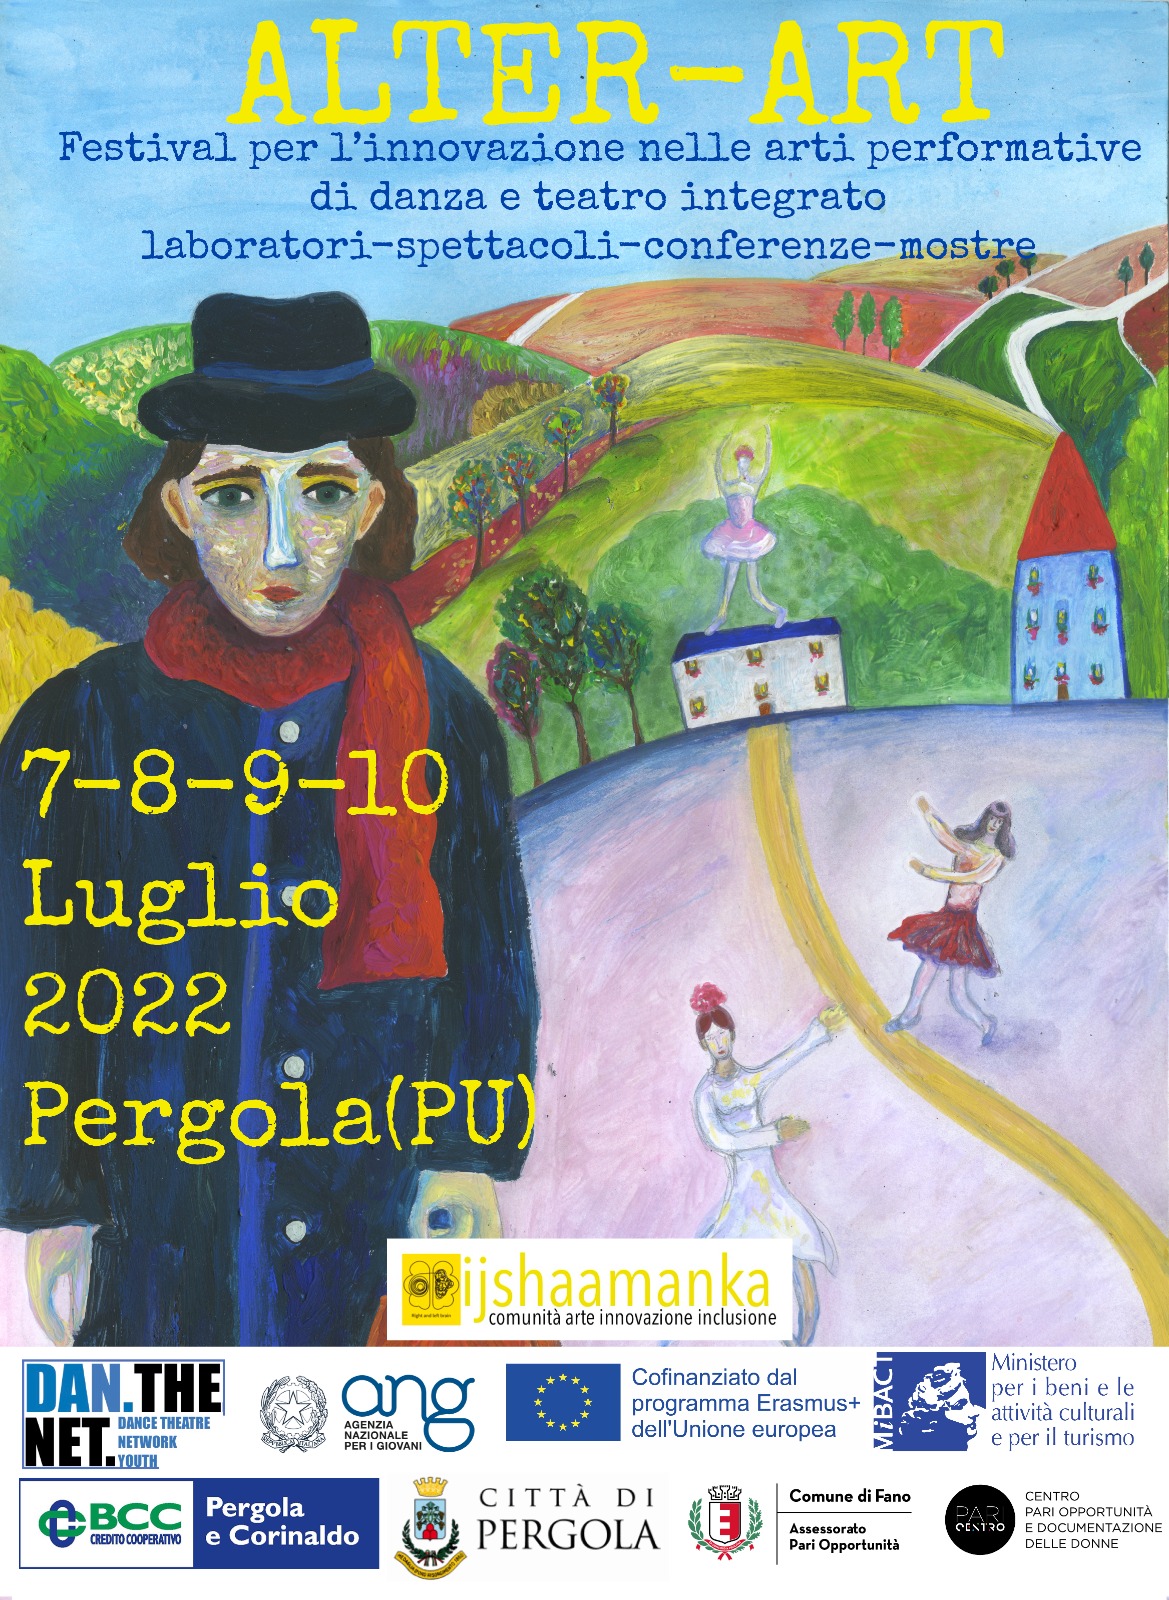 Marche. Pergola ospita la II edizione del Festival europeo “Alter-Art”: danza e teatro integrati/FOTO